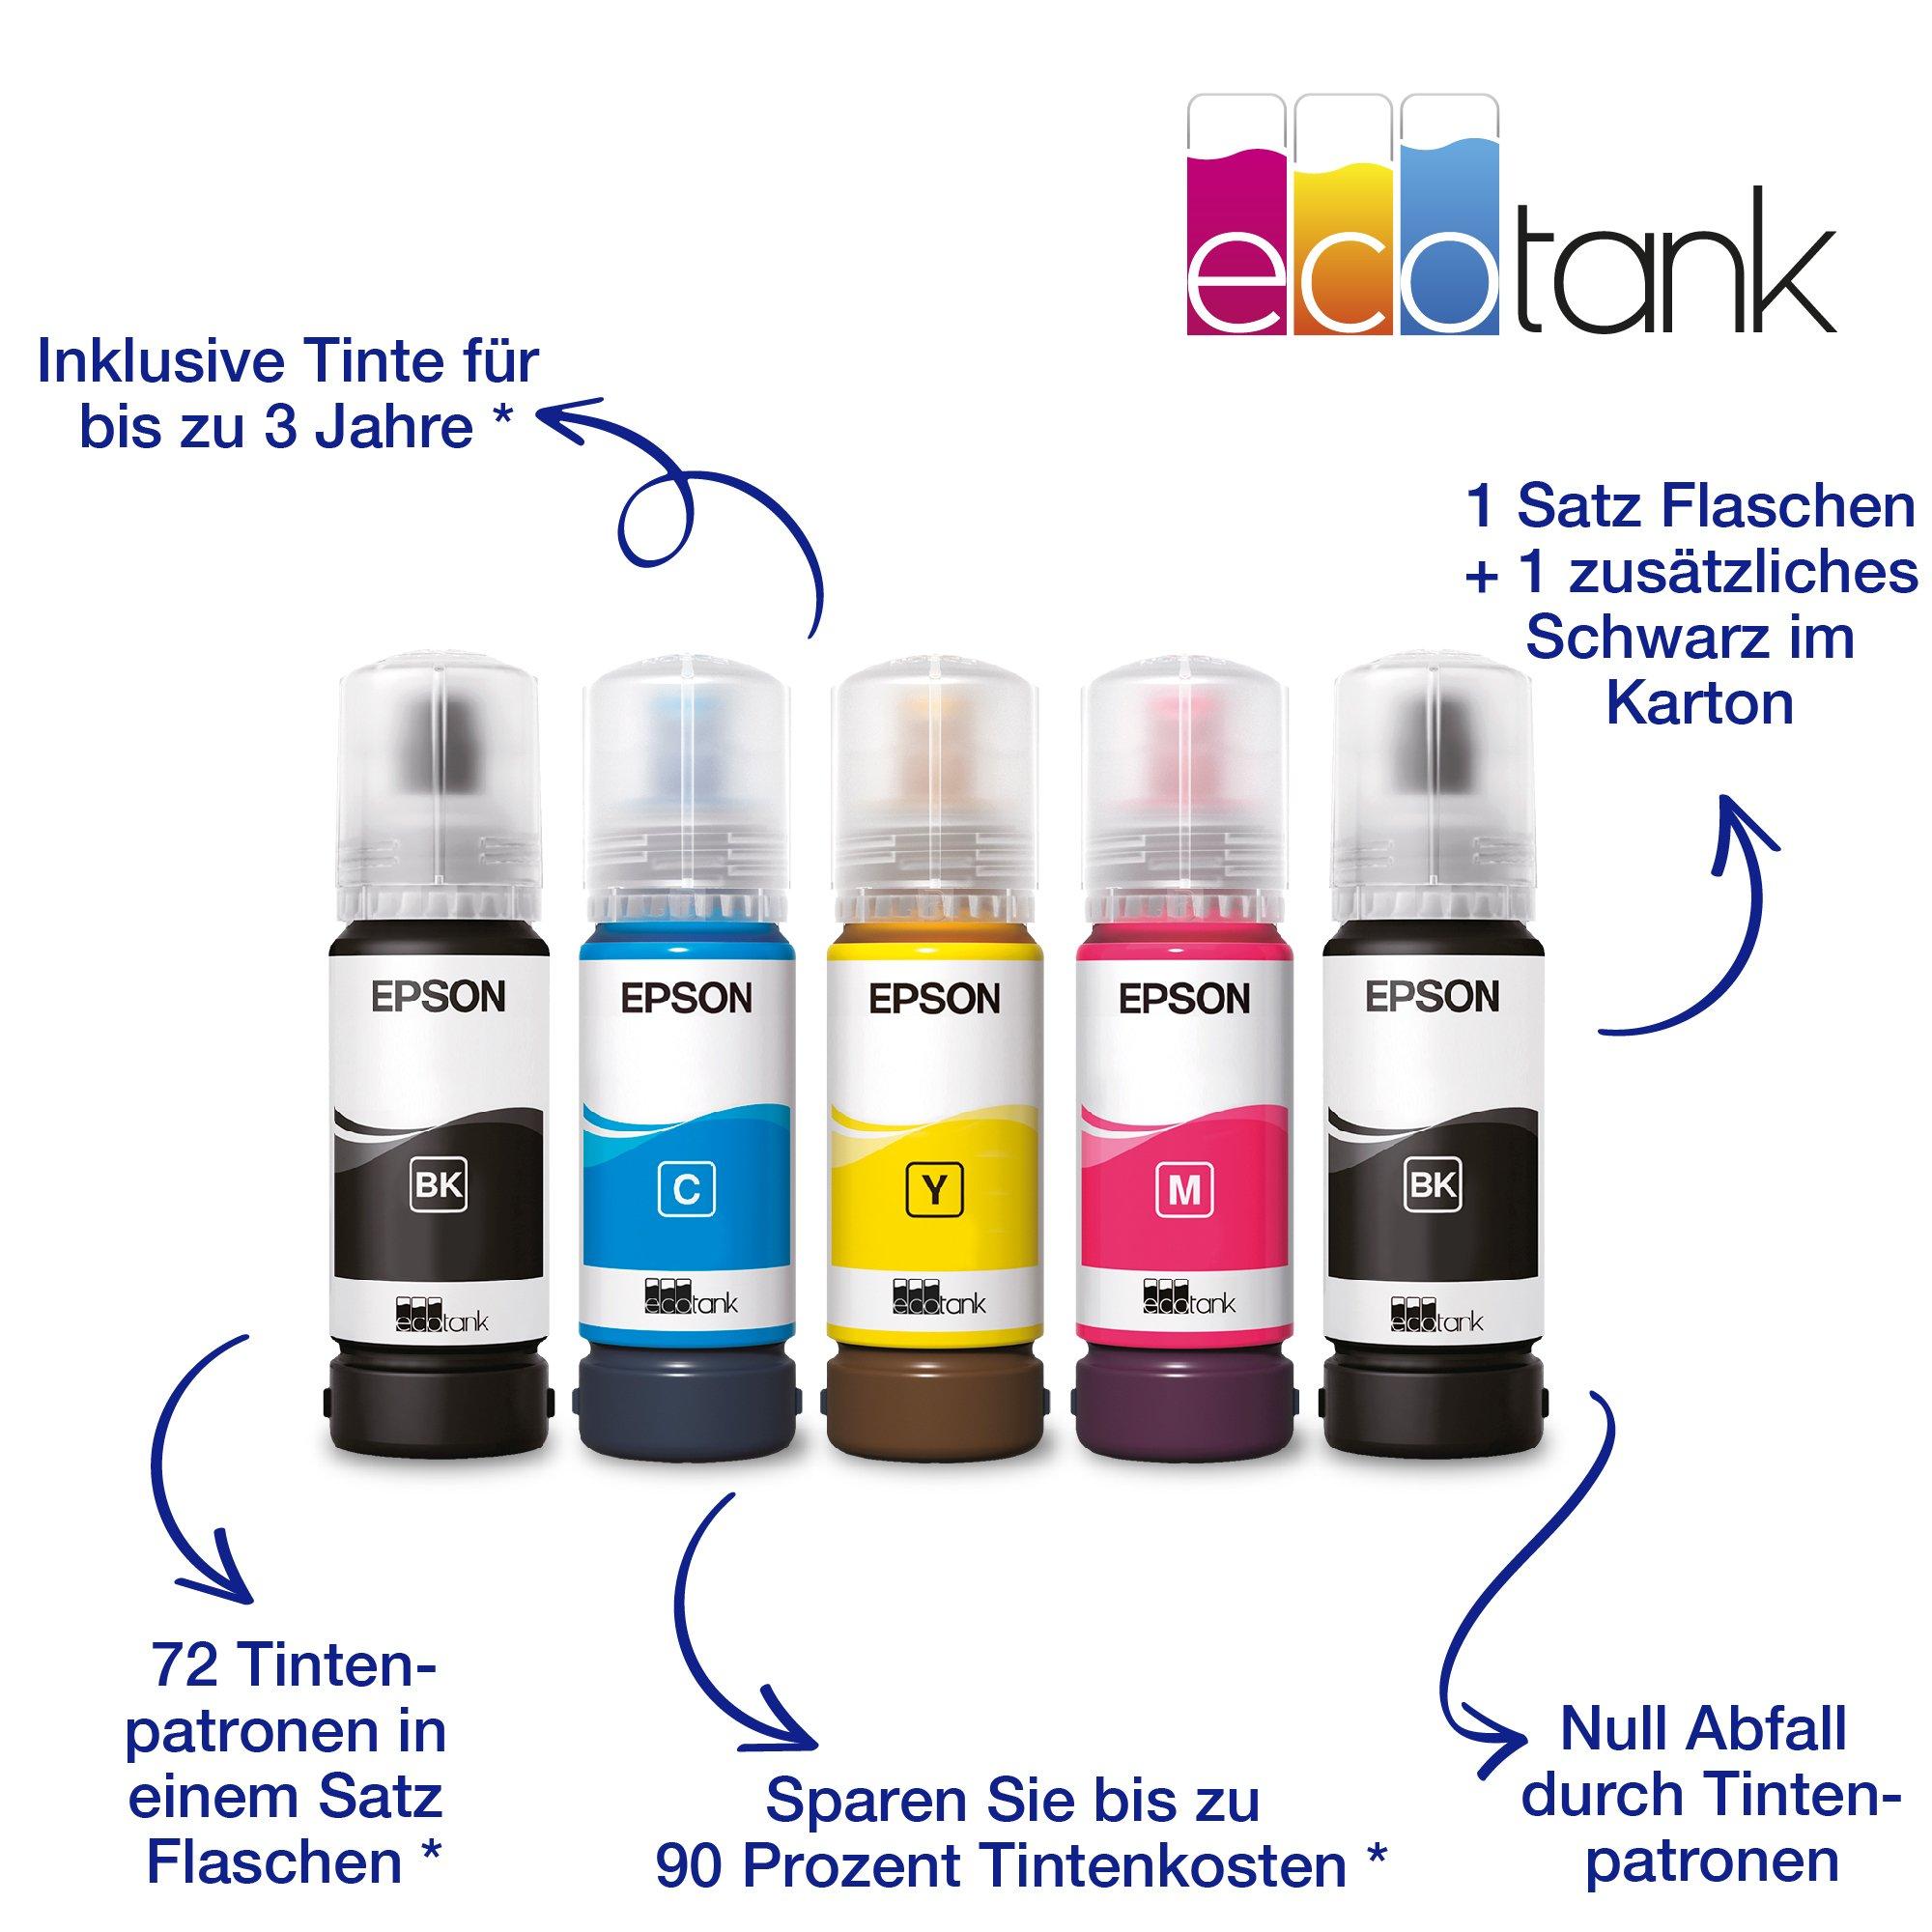 EcoTank ET-4810 Consumer Deutschland Epson Drucker Produkte | | | | | Tintenstrahldrucker